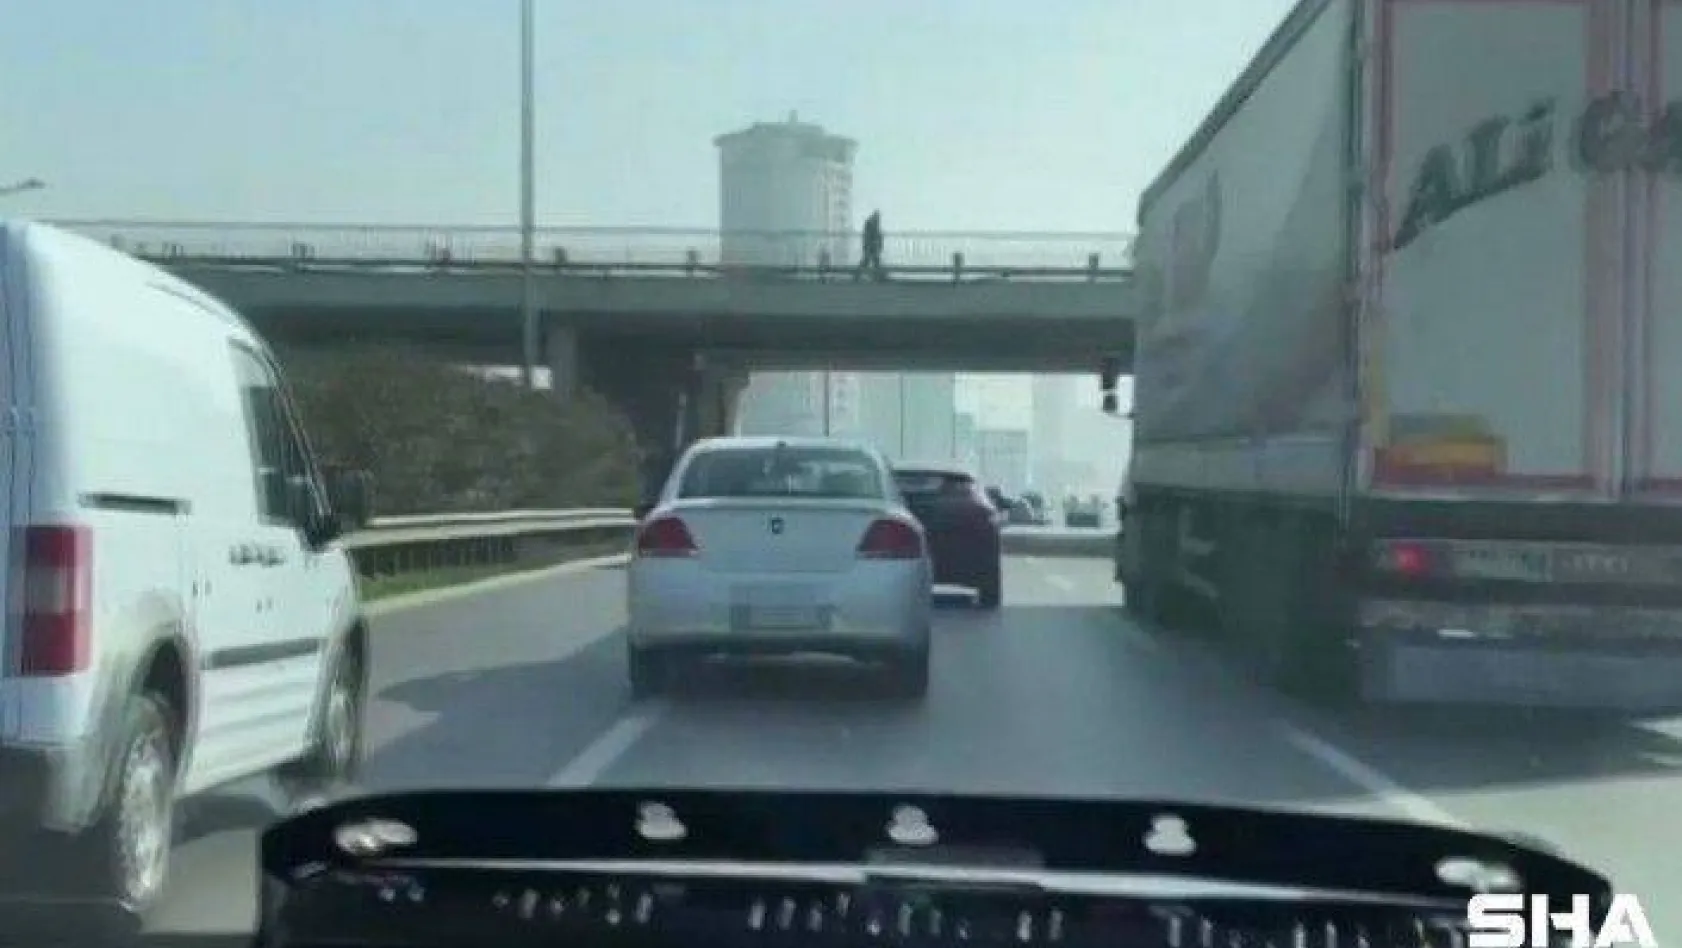 Trafikte makas atan sürücüye ceza yağdı